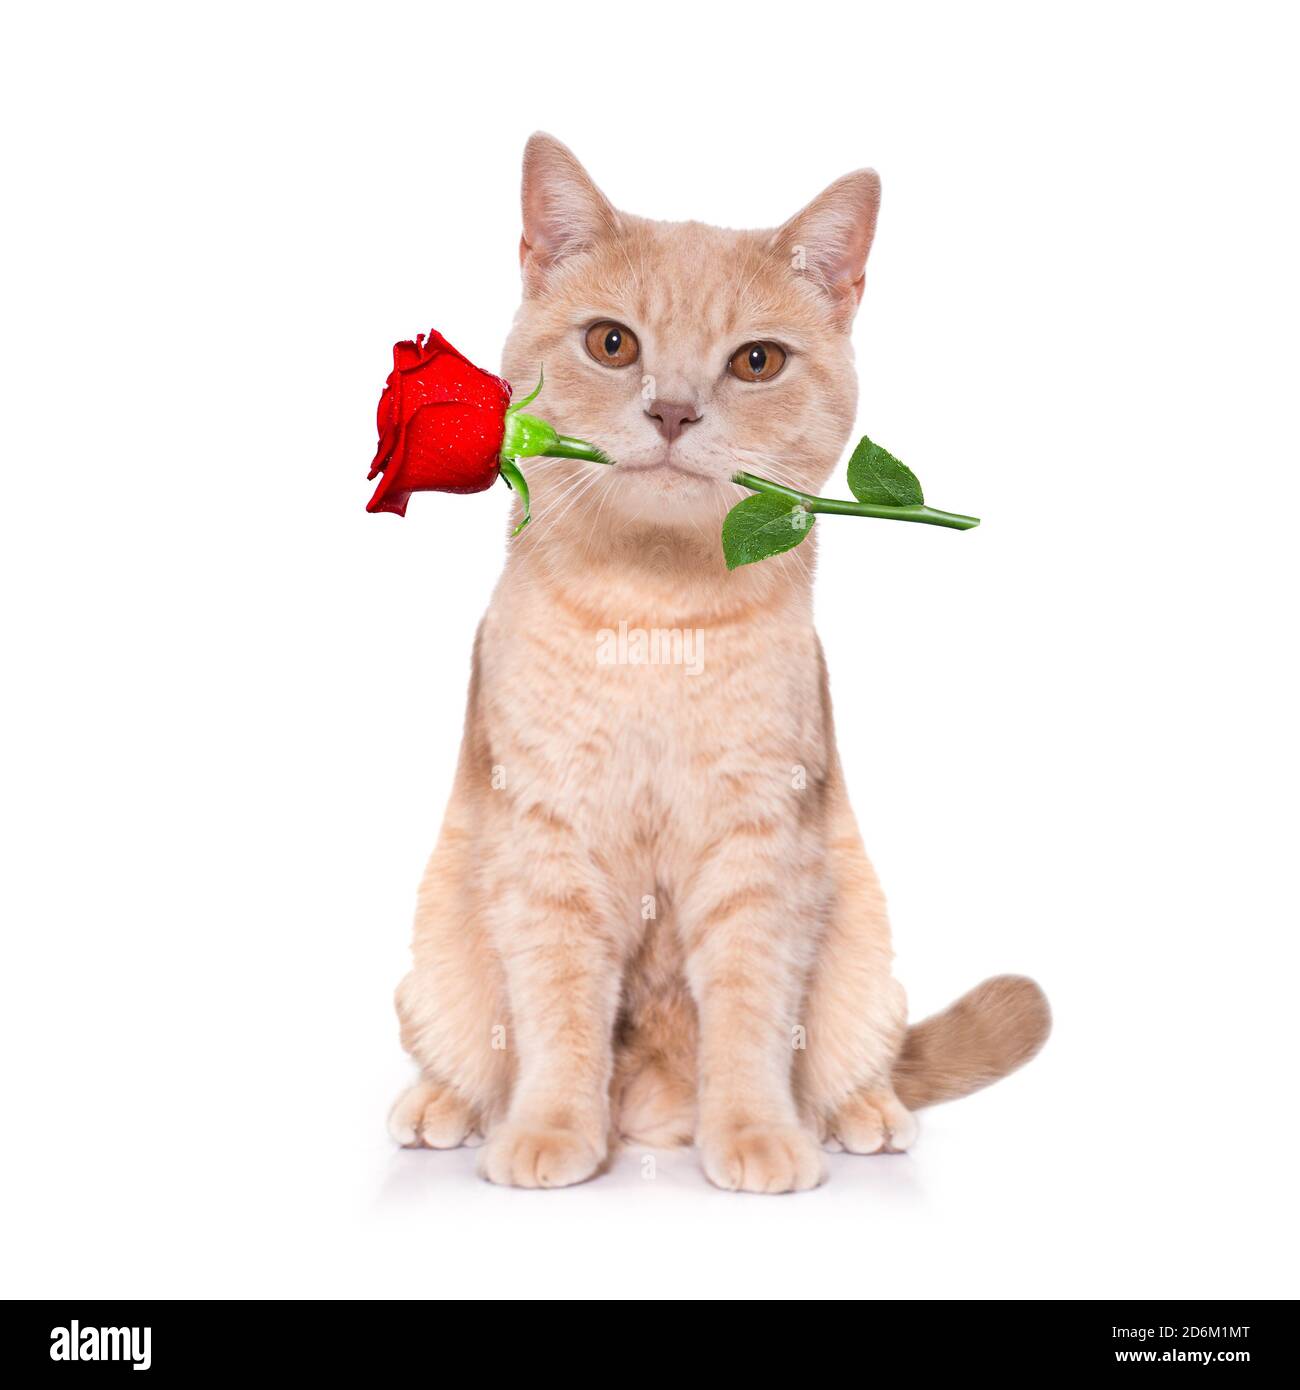 Katze Kätzchen suchen und starren Sie in der Liebe mit Rose im Mund  Stockfotografie - Alamy